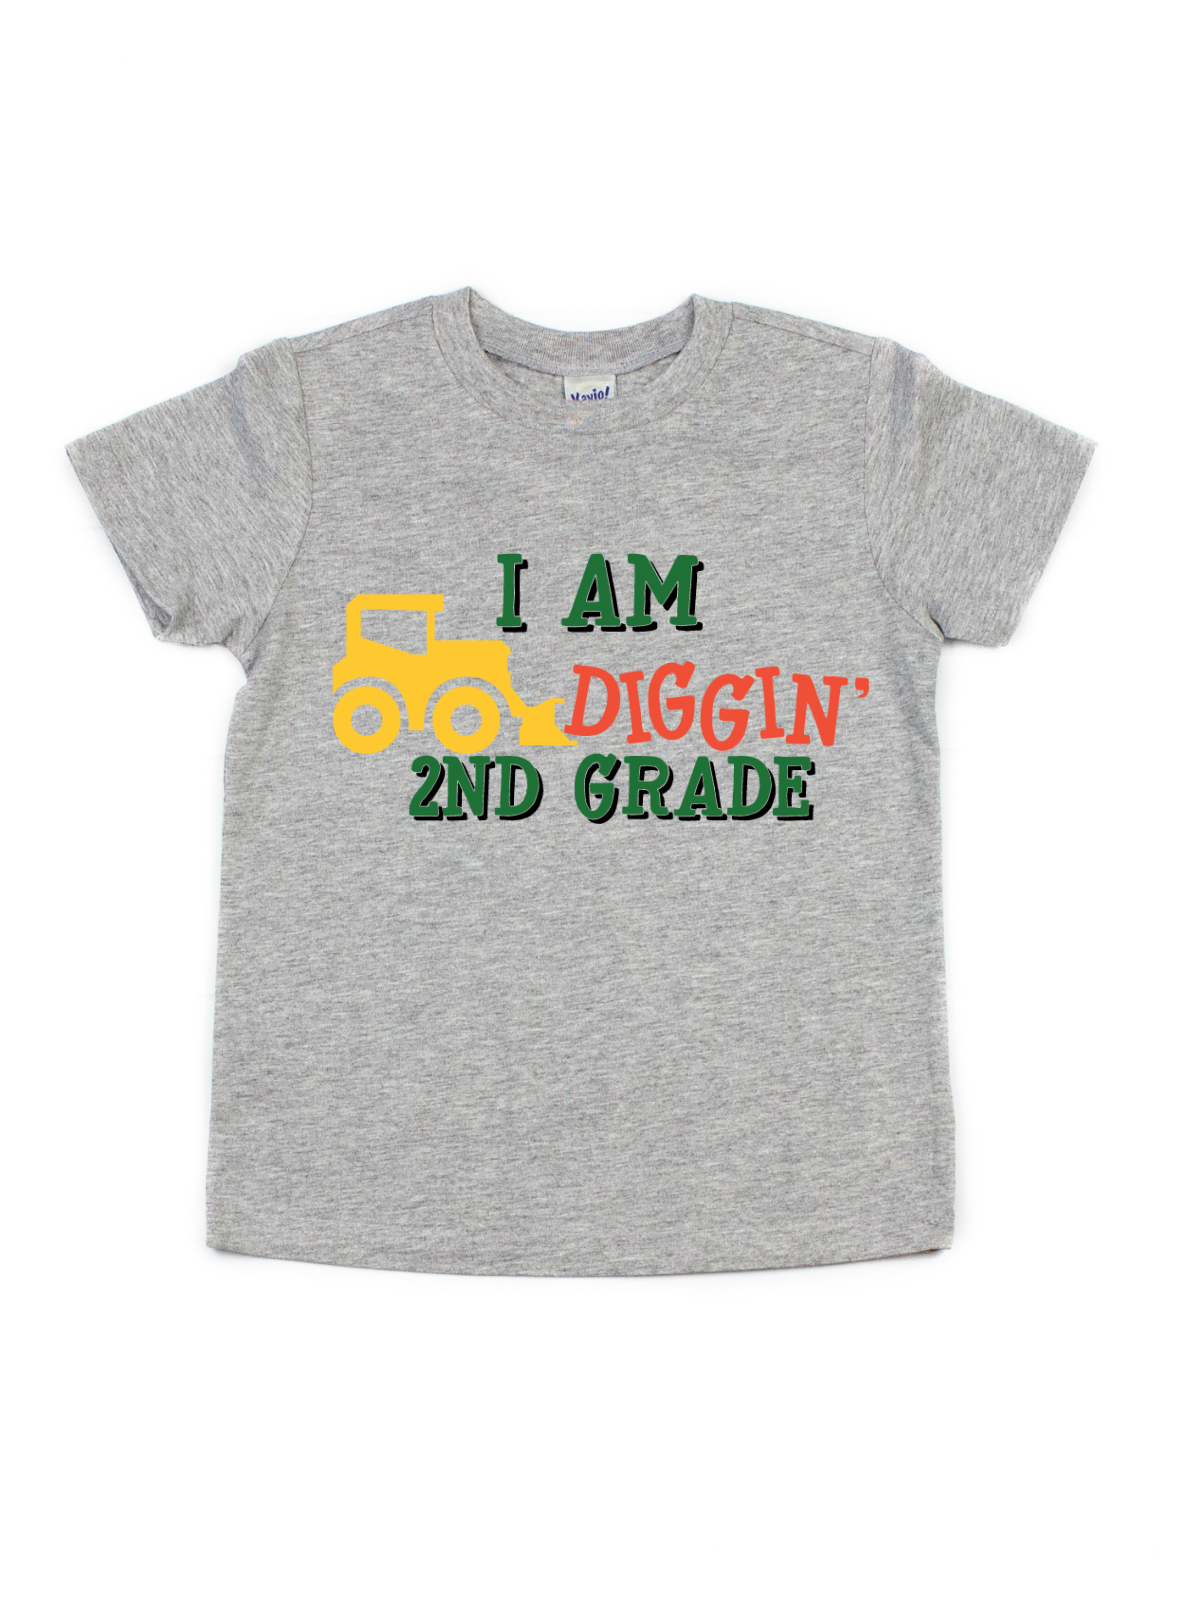 I am digging 1st grade kids school shirt